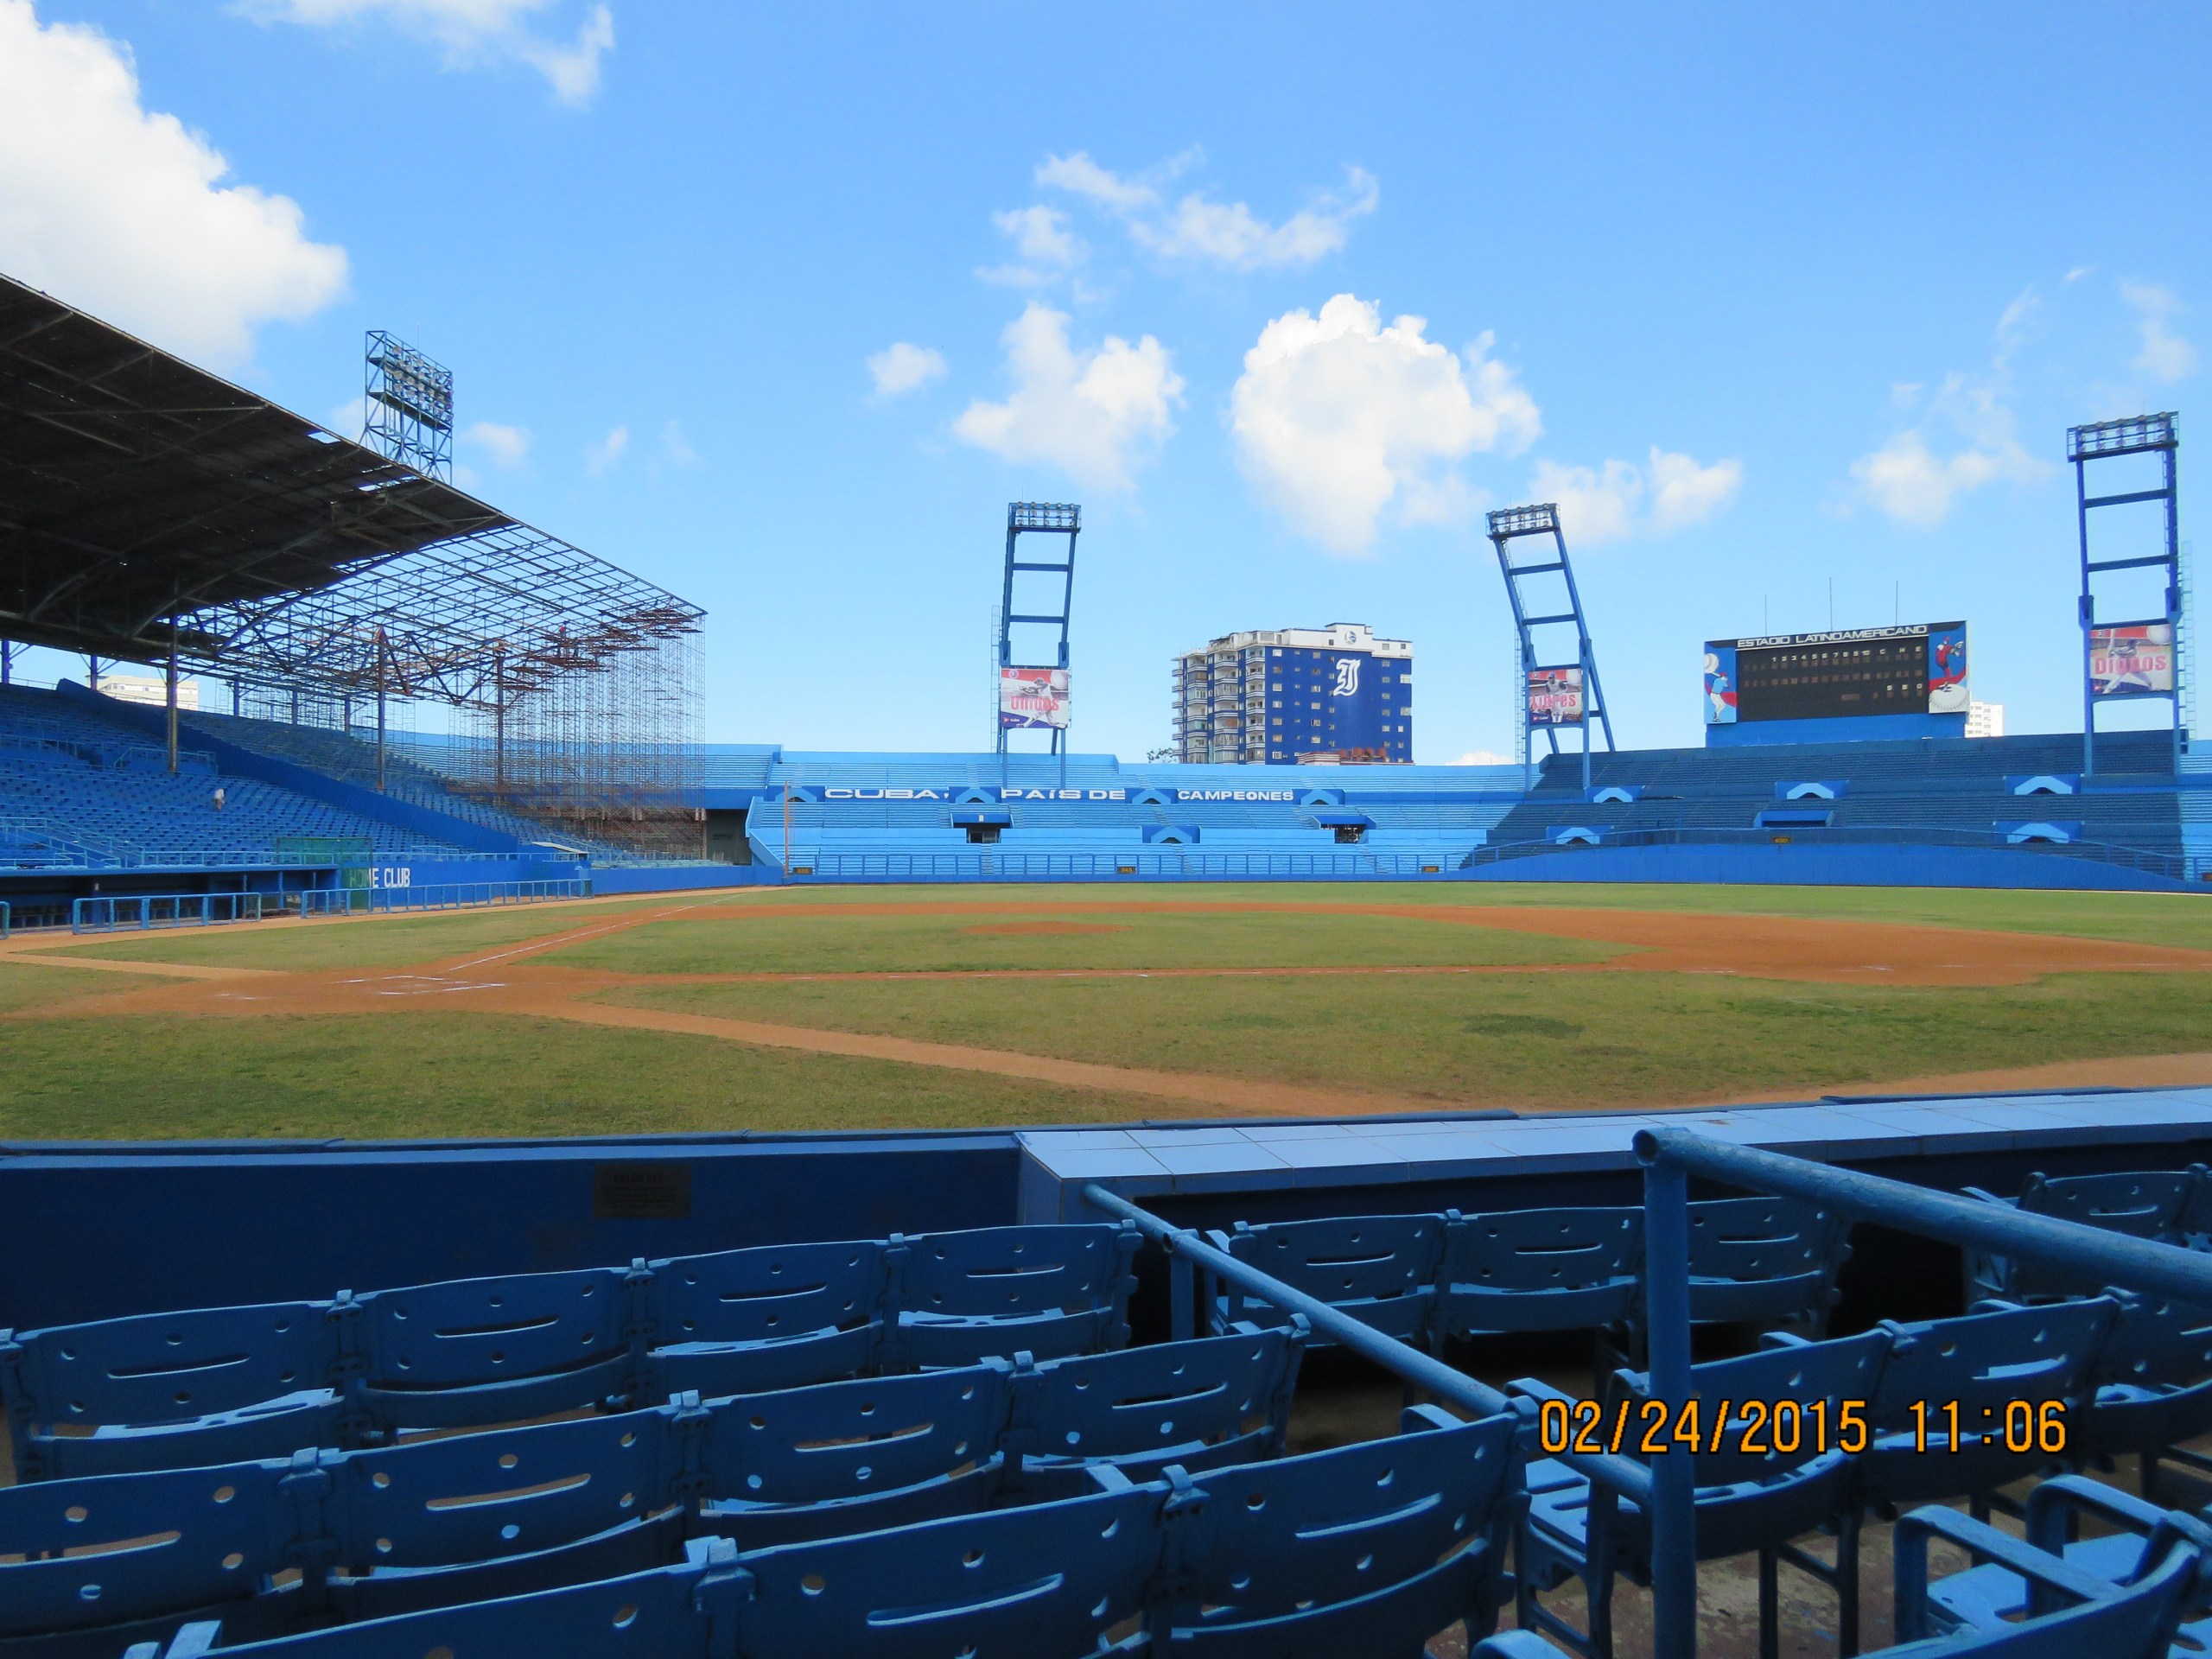 Estadio Latino Americano in Havna, Cuba (COURTESY OF DONALD PLAVNICK)